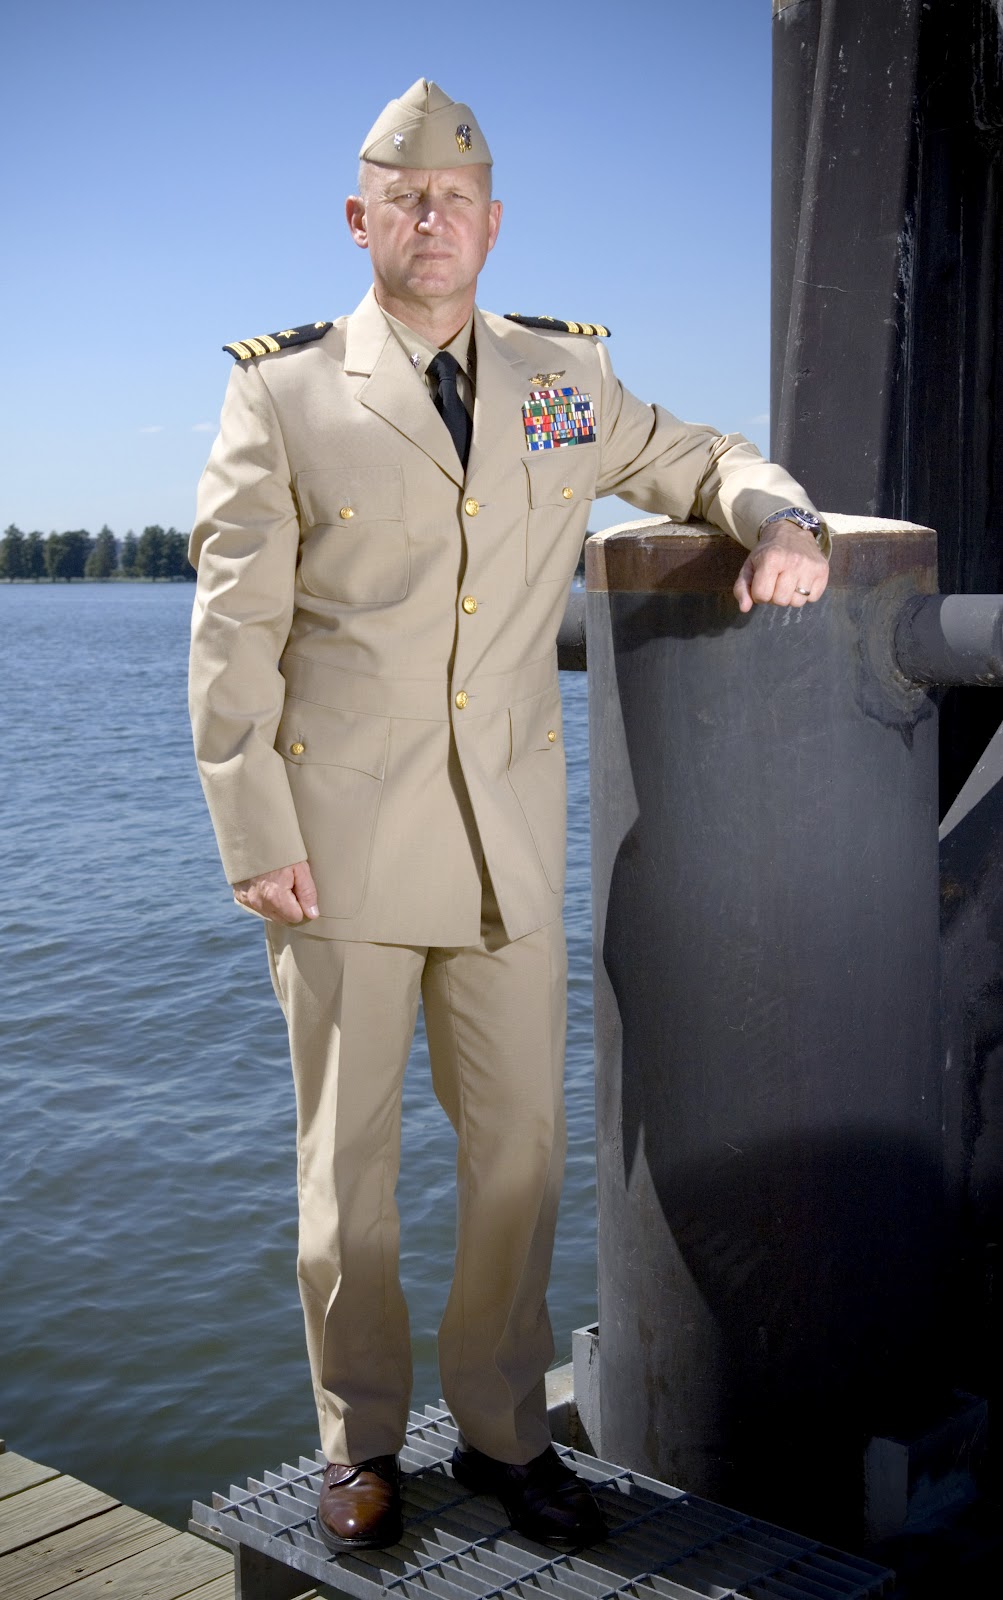 Captain D Uniform